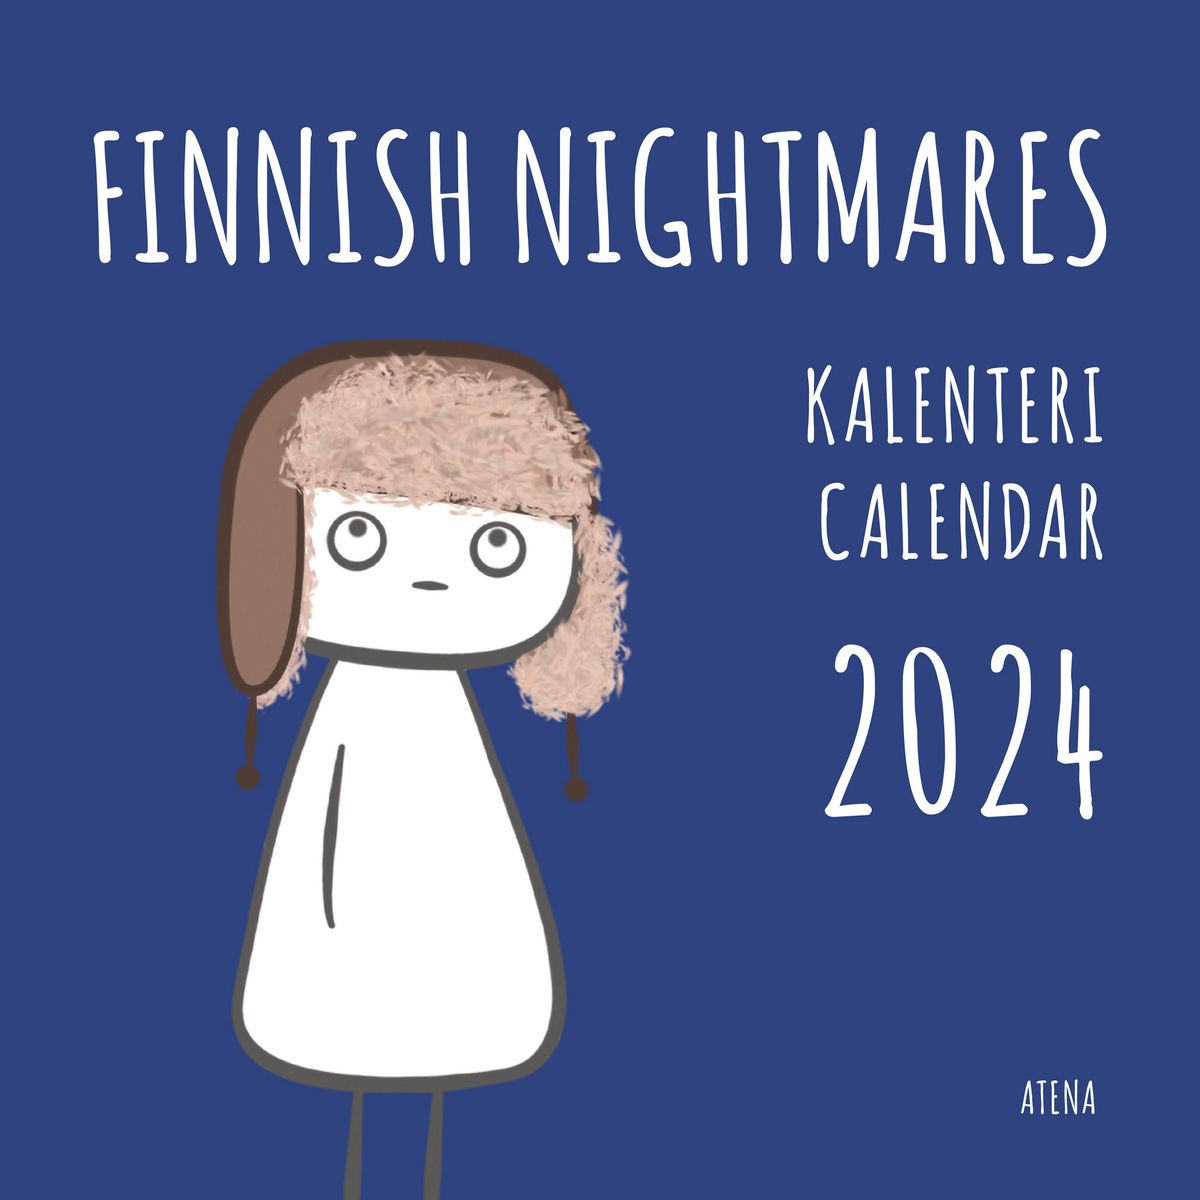 Finnish Nightmares seinäkalenteri 2024 | Otava verkkokauppa